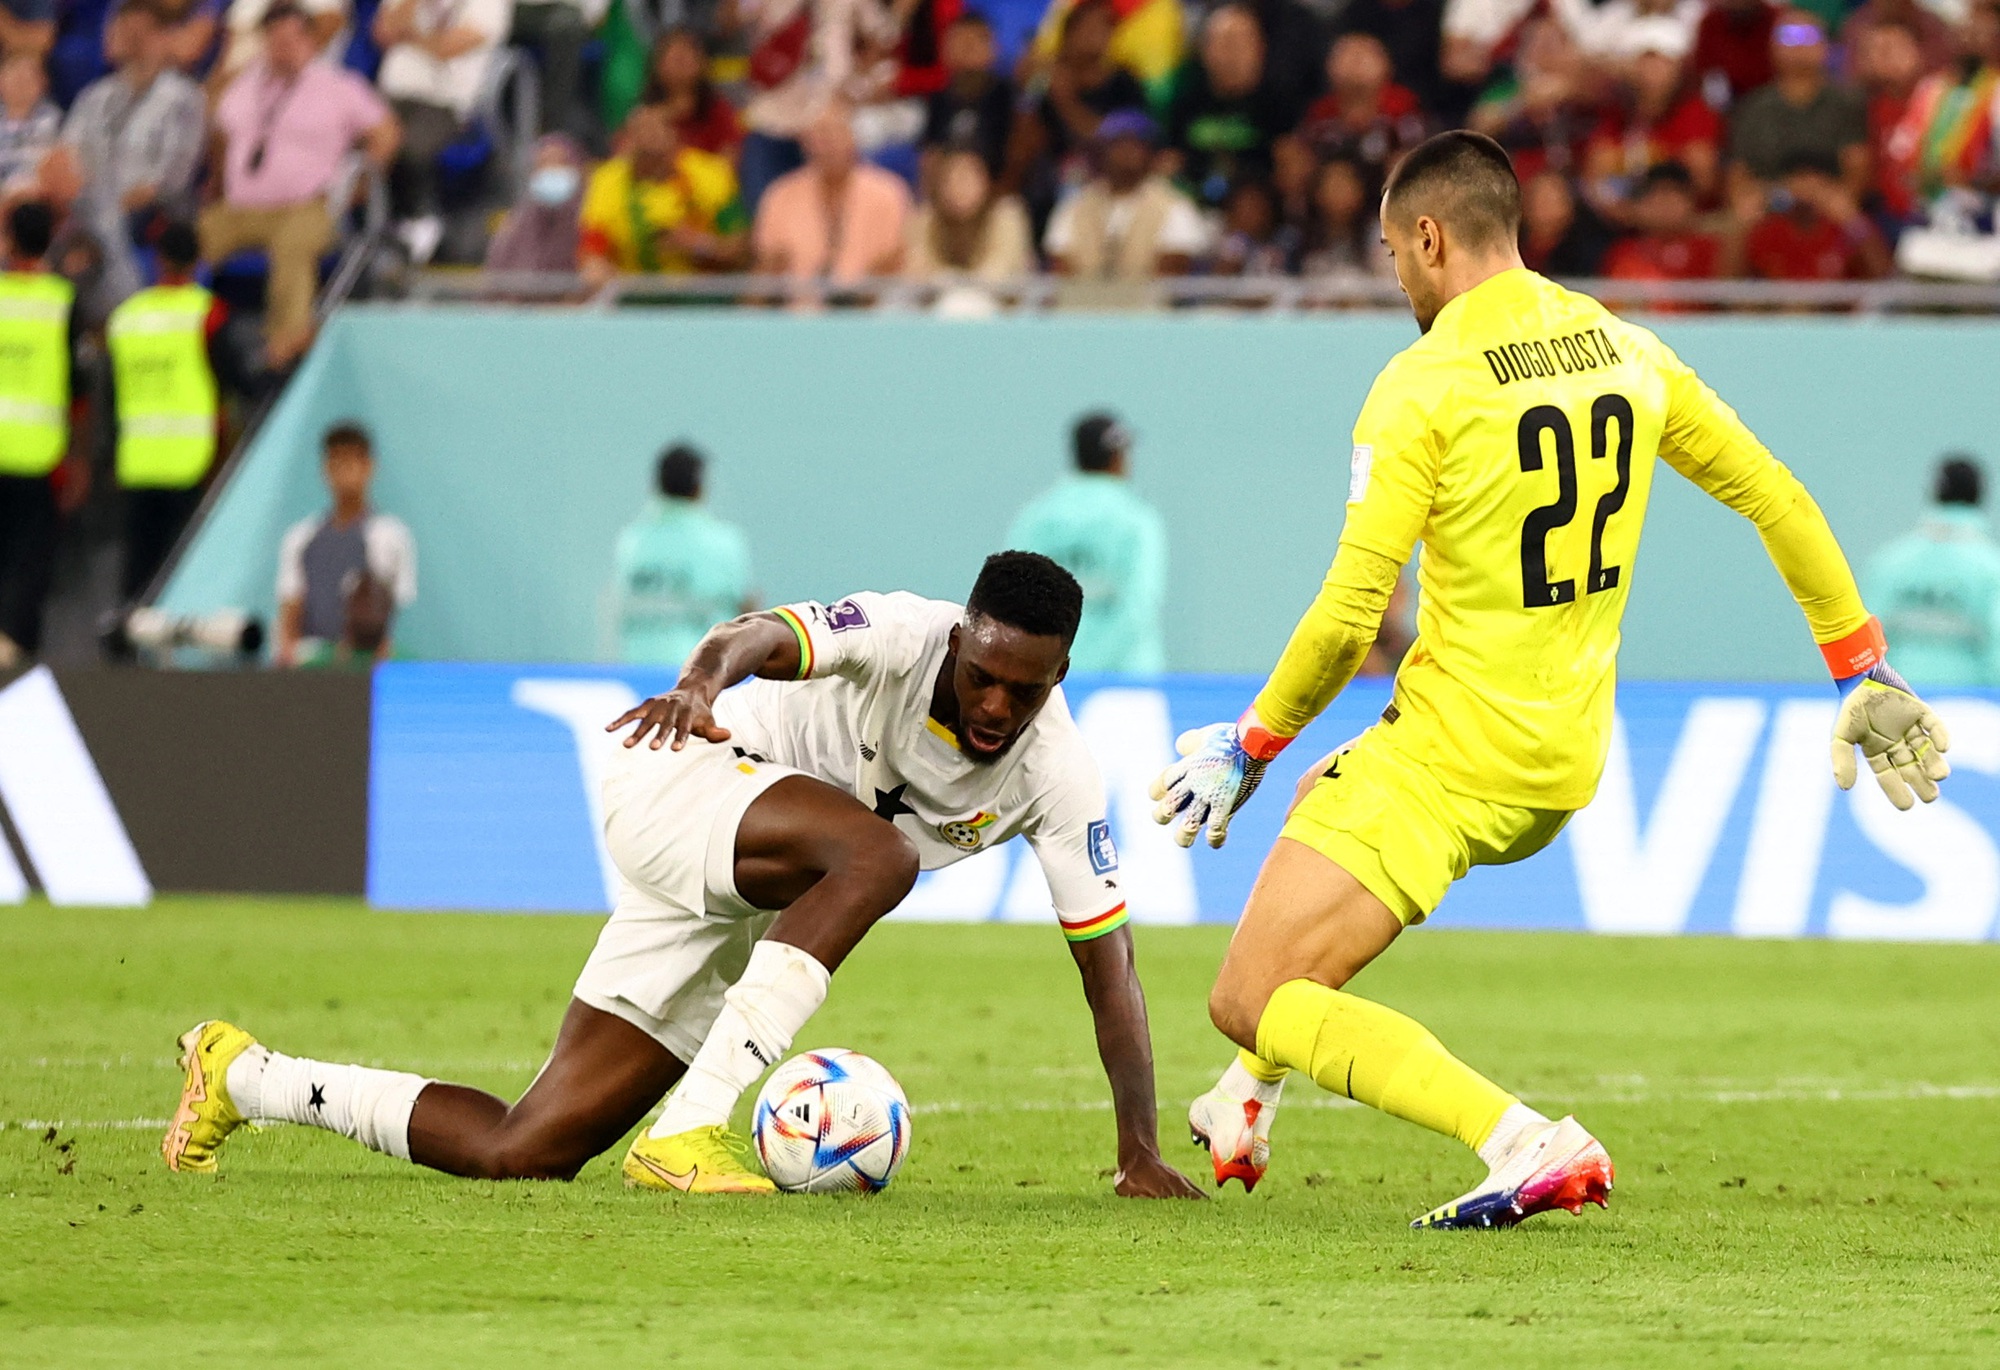 Thua Ghana 2-3, Hàn Quốc cạn hy vọng ở World Cup Qatar - Ảnh 2.